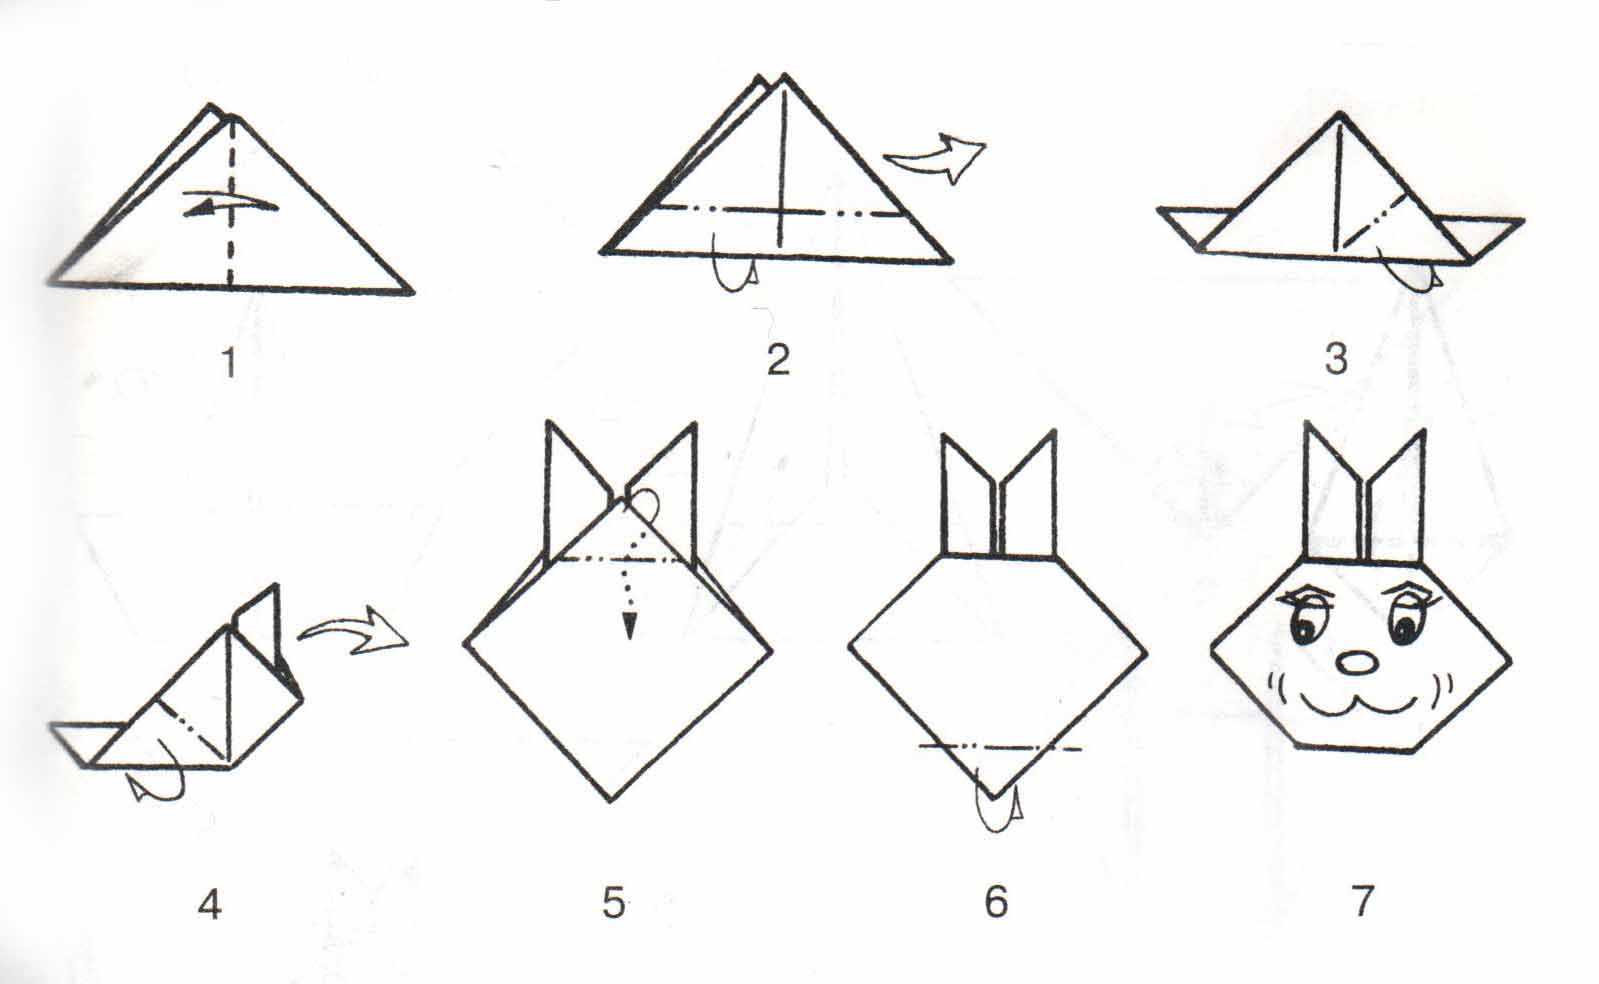 Дракон из бумаги: схемы и шаблоны